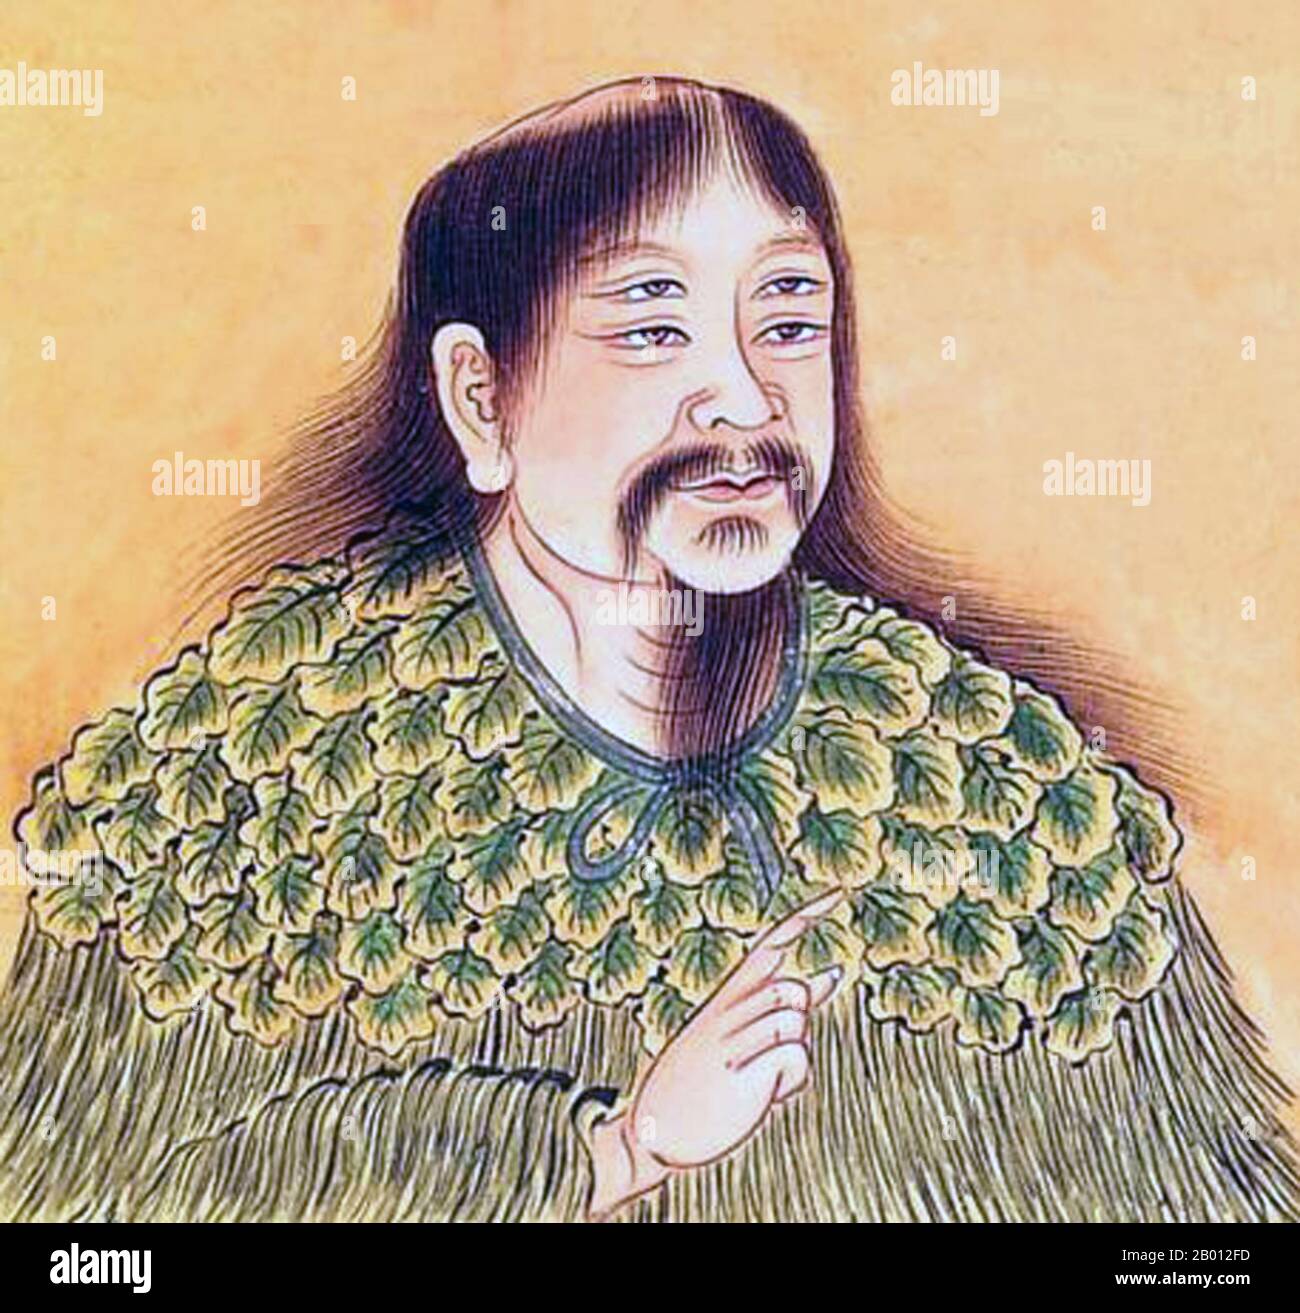 Chine : Cangjie (Ts'ang-chieh, c. 2650 av. J.-C.), historien officiel à quatre yeux de l'empereur jaune et inventeur des caractères chinois. Peinture, 1685. Cangjie (Ts'ang-chieh) est une figure très importante dans la Chine ancienne (c. 2650 av. J.-C.), considéré comme l'historien officiel de l'empereur jaune et l'inventeur des caractères chinois. La légende dit qu'il avait quatre yeux et quatre élèves, et que quand il a inventé les personnages, les divinités et les fantômes pleuraient et le ciel pleura le millet. Il est considéré comme une figure légendaire plutôt que comme une figure historique. Banque D'Images